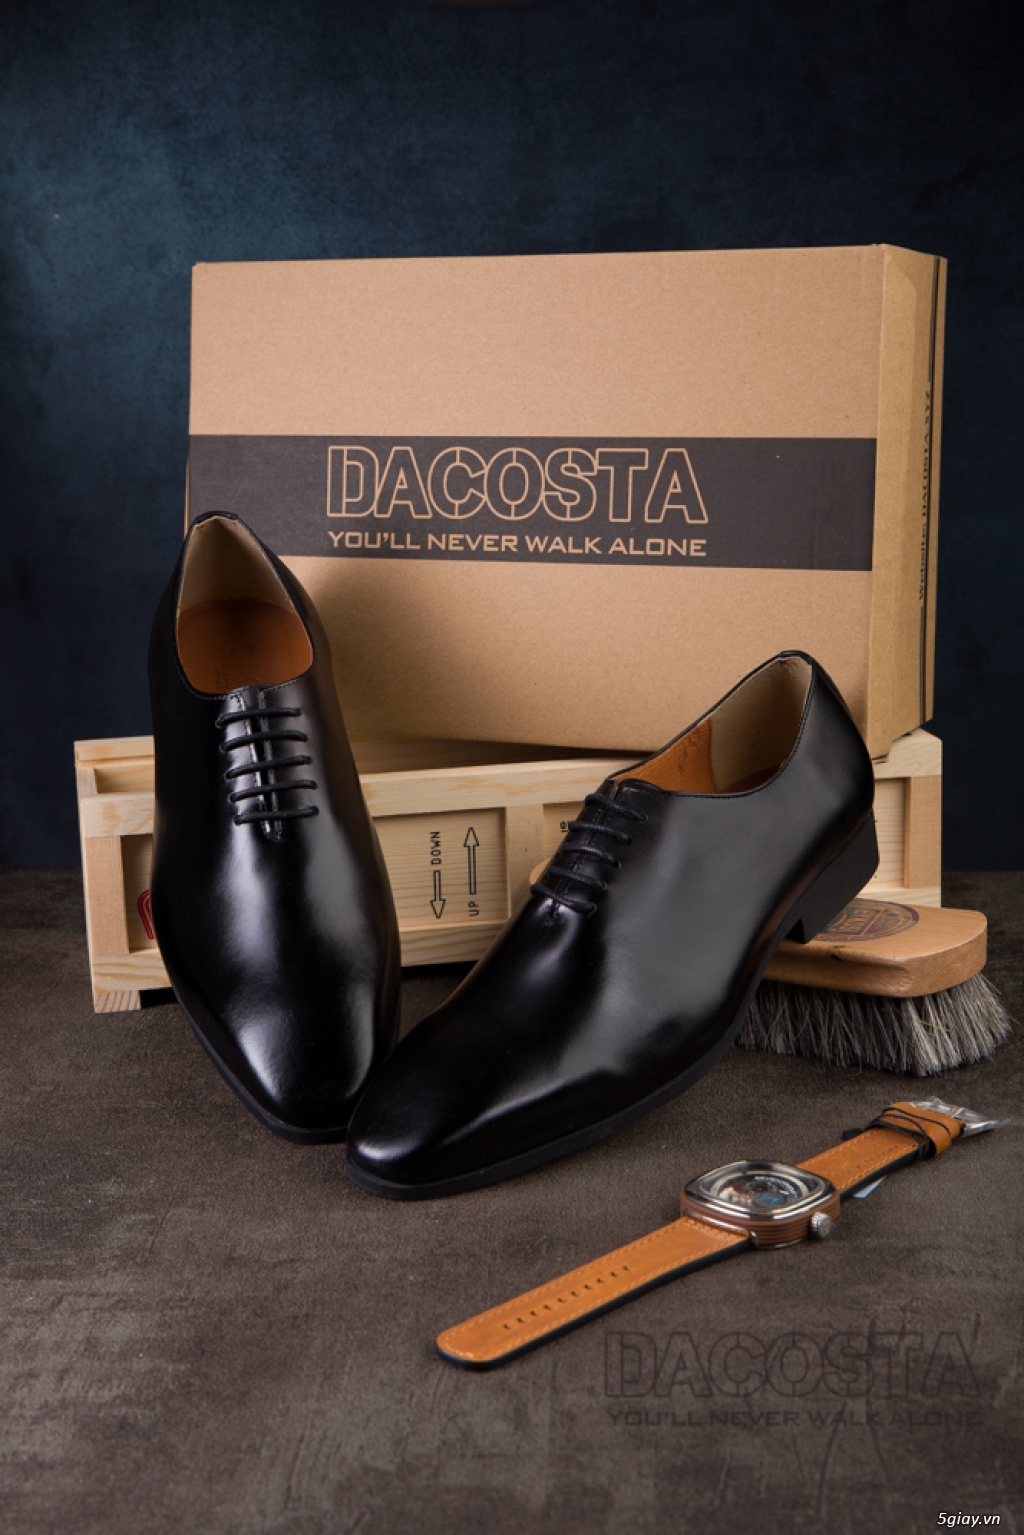 Tiệm Giày Dacosta - Những Mẫu Giày Tây Oxford Hot Nhất 2019 - 16